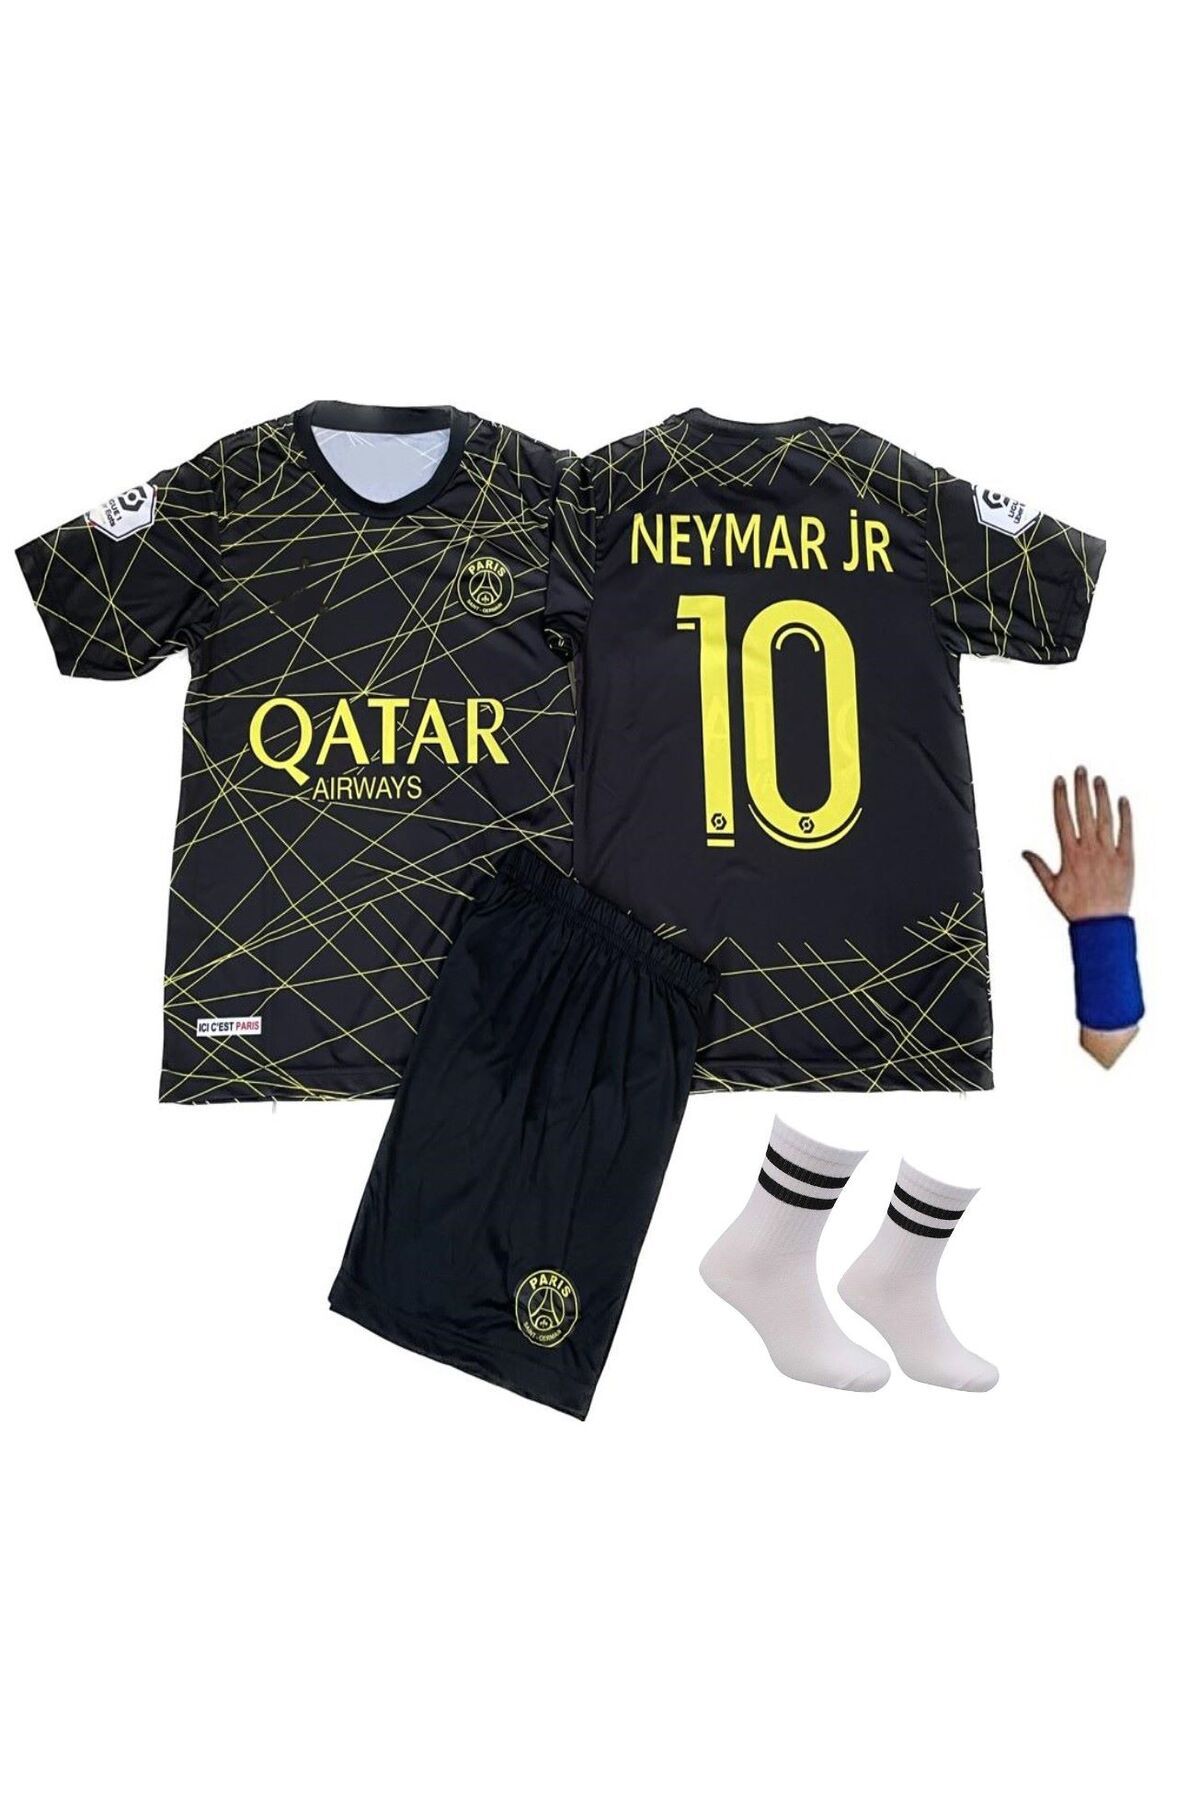 yenteks Psg Gold Neymar 22-2023 Sezon Çocuk Futbol Forması Özel Tasarım 4'lü Set 857potrr